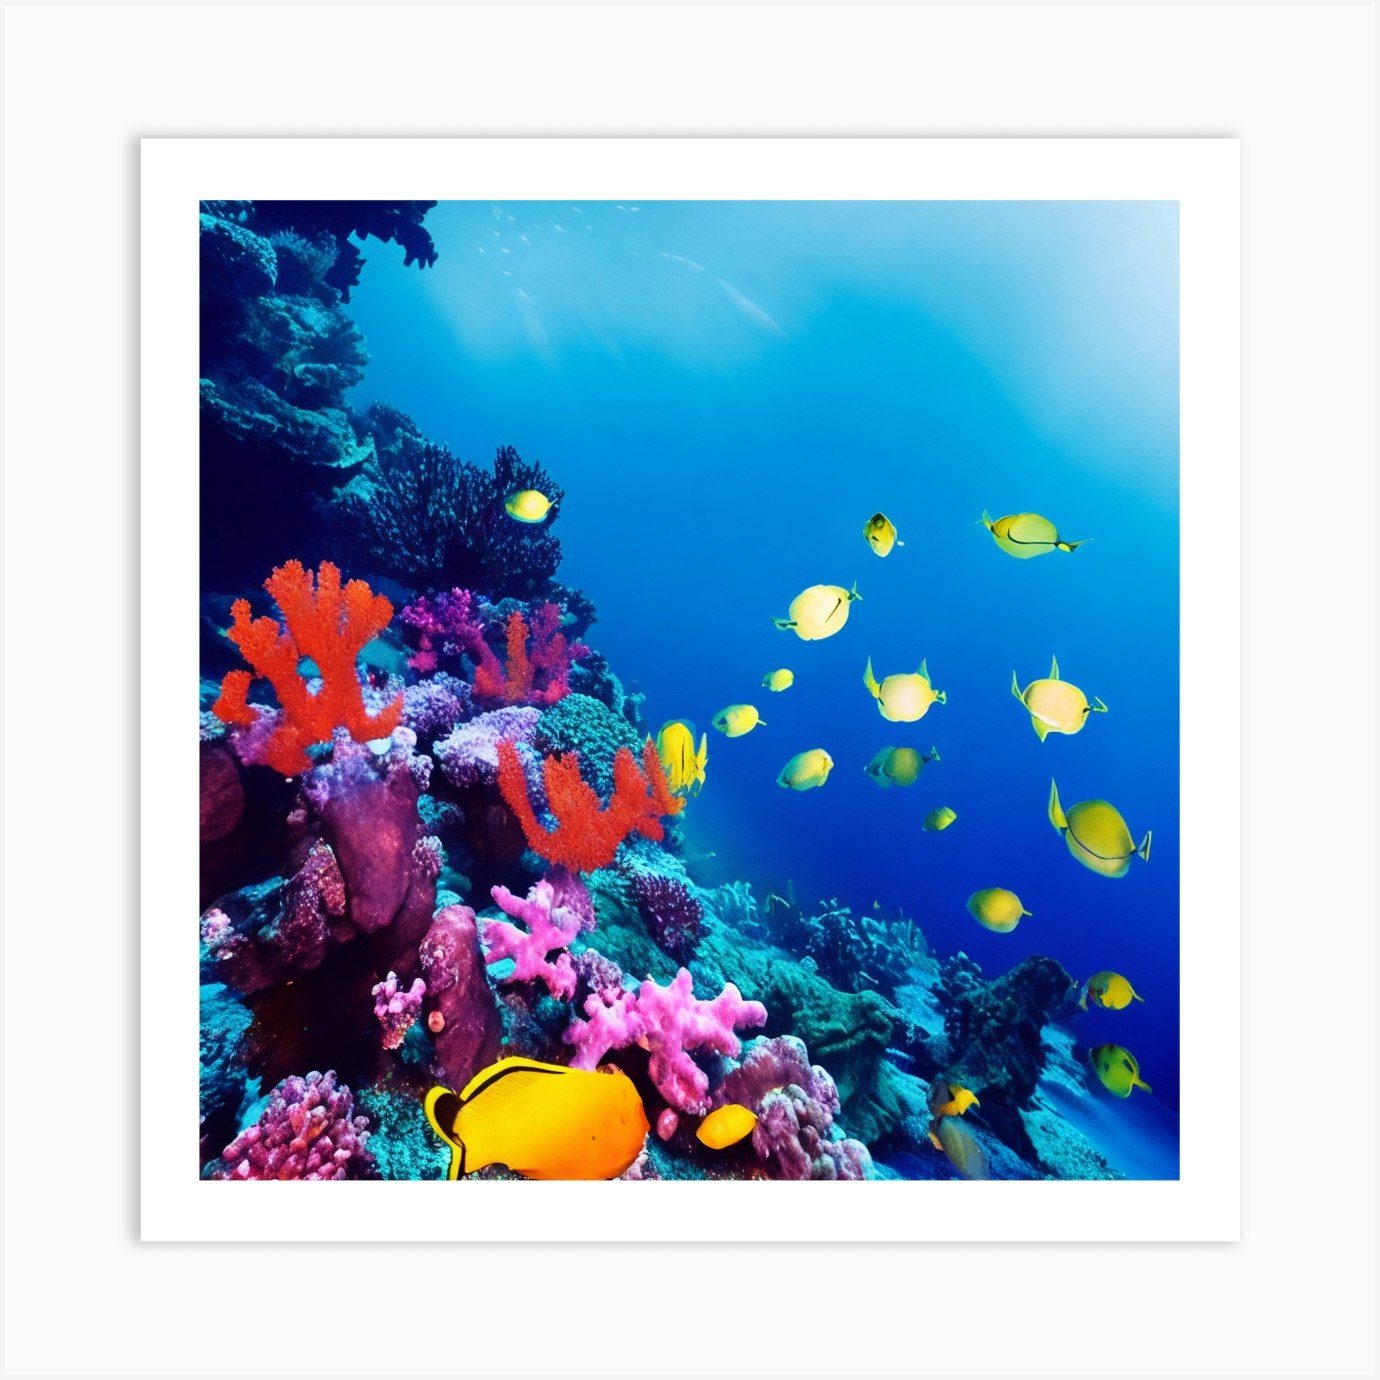 Premium Photo  Pop art depiction of vibrant coral reefs